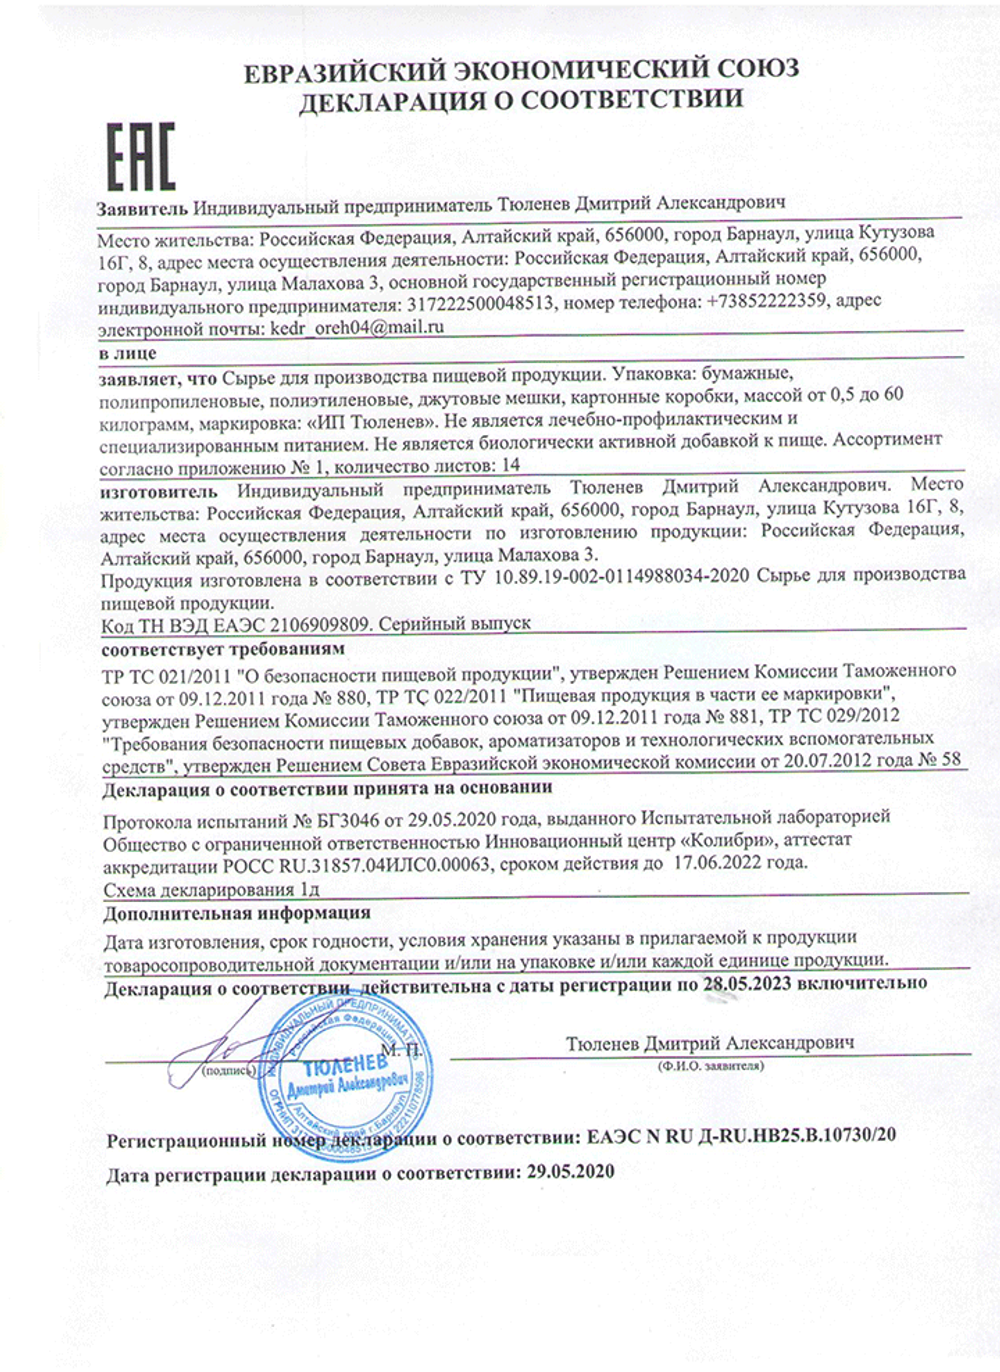 Изображение сертификата соответствия на траву зизифоры-adonnis.ru